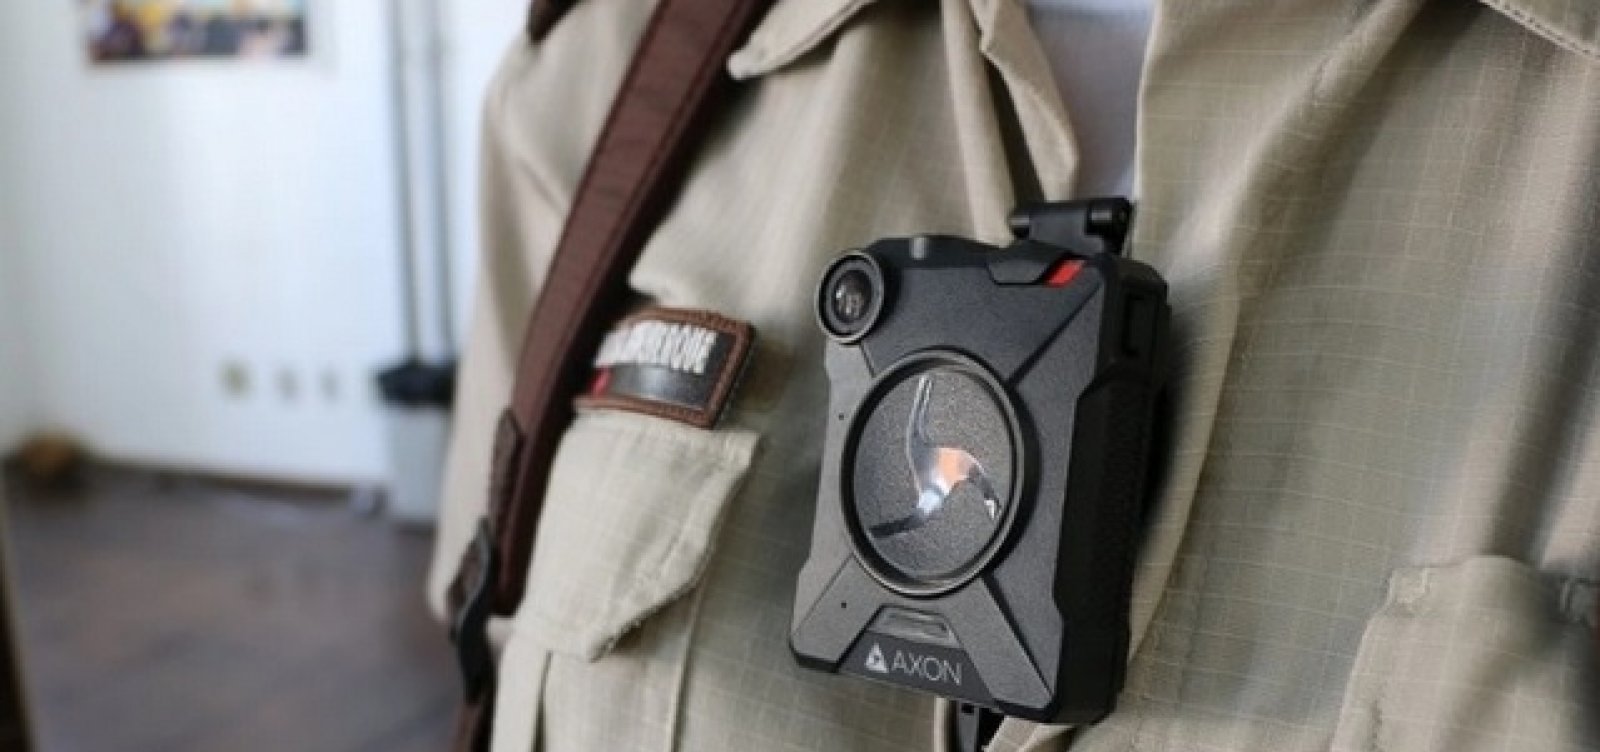 Um ano após anúncio, implantação de câmeras em uniformes da PM está emperrada na Bahia